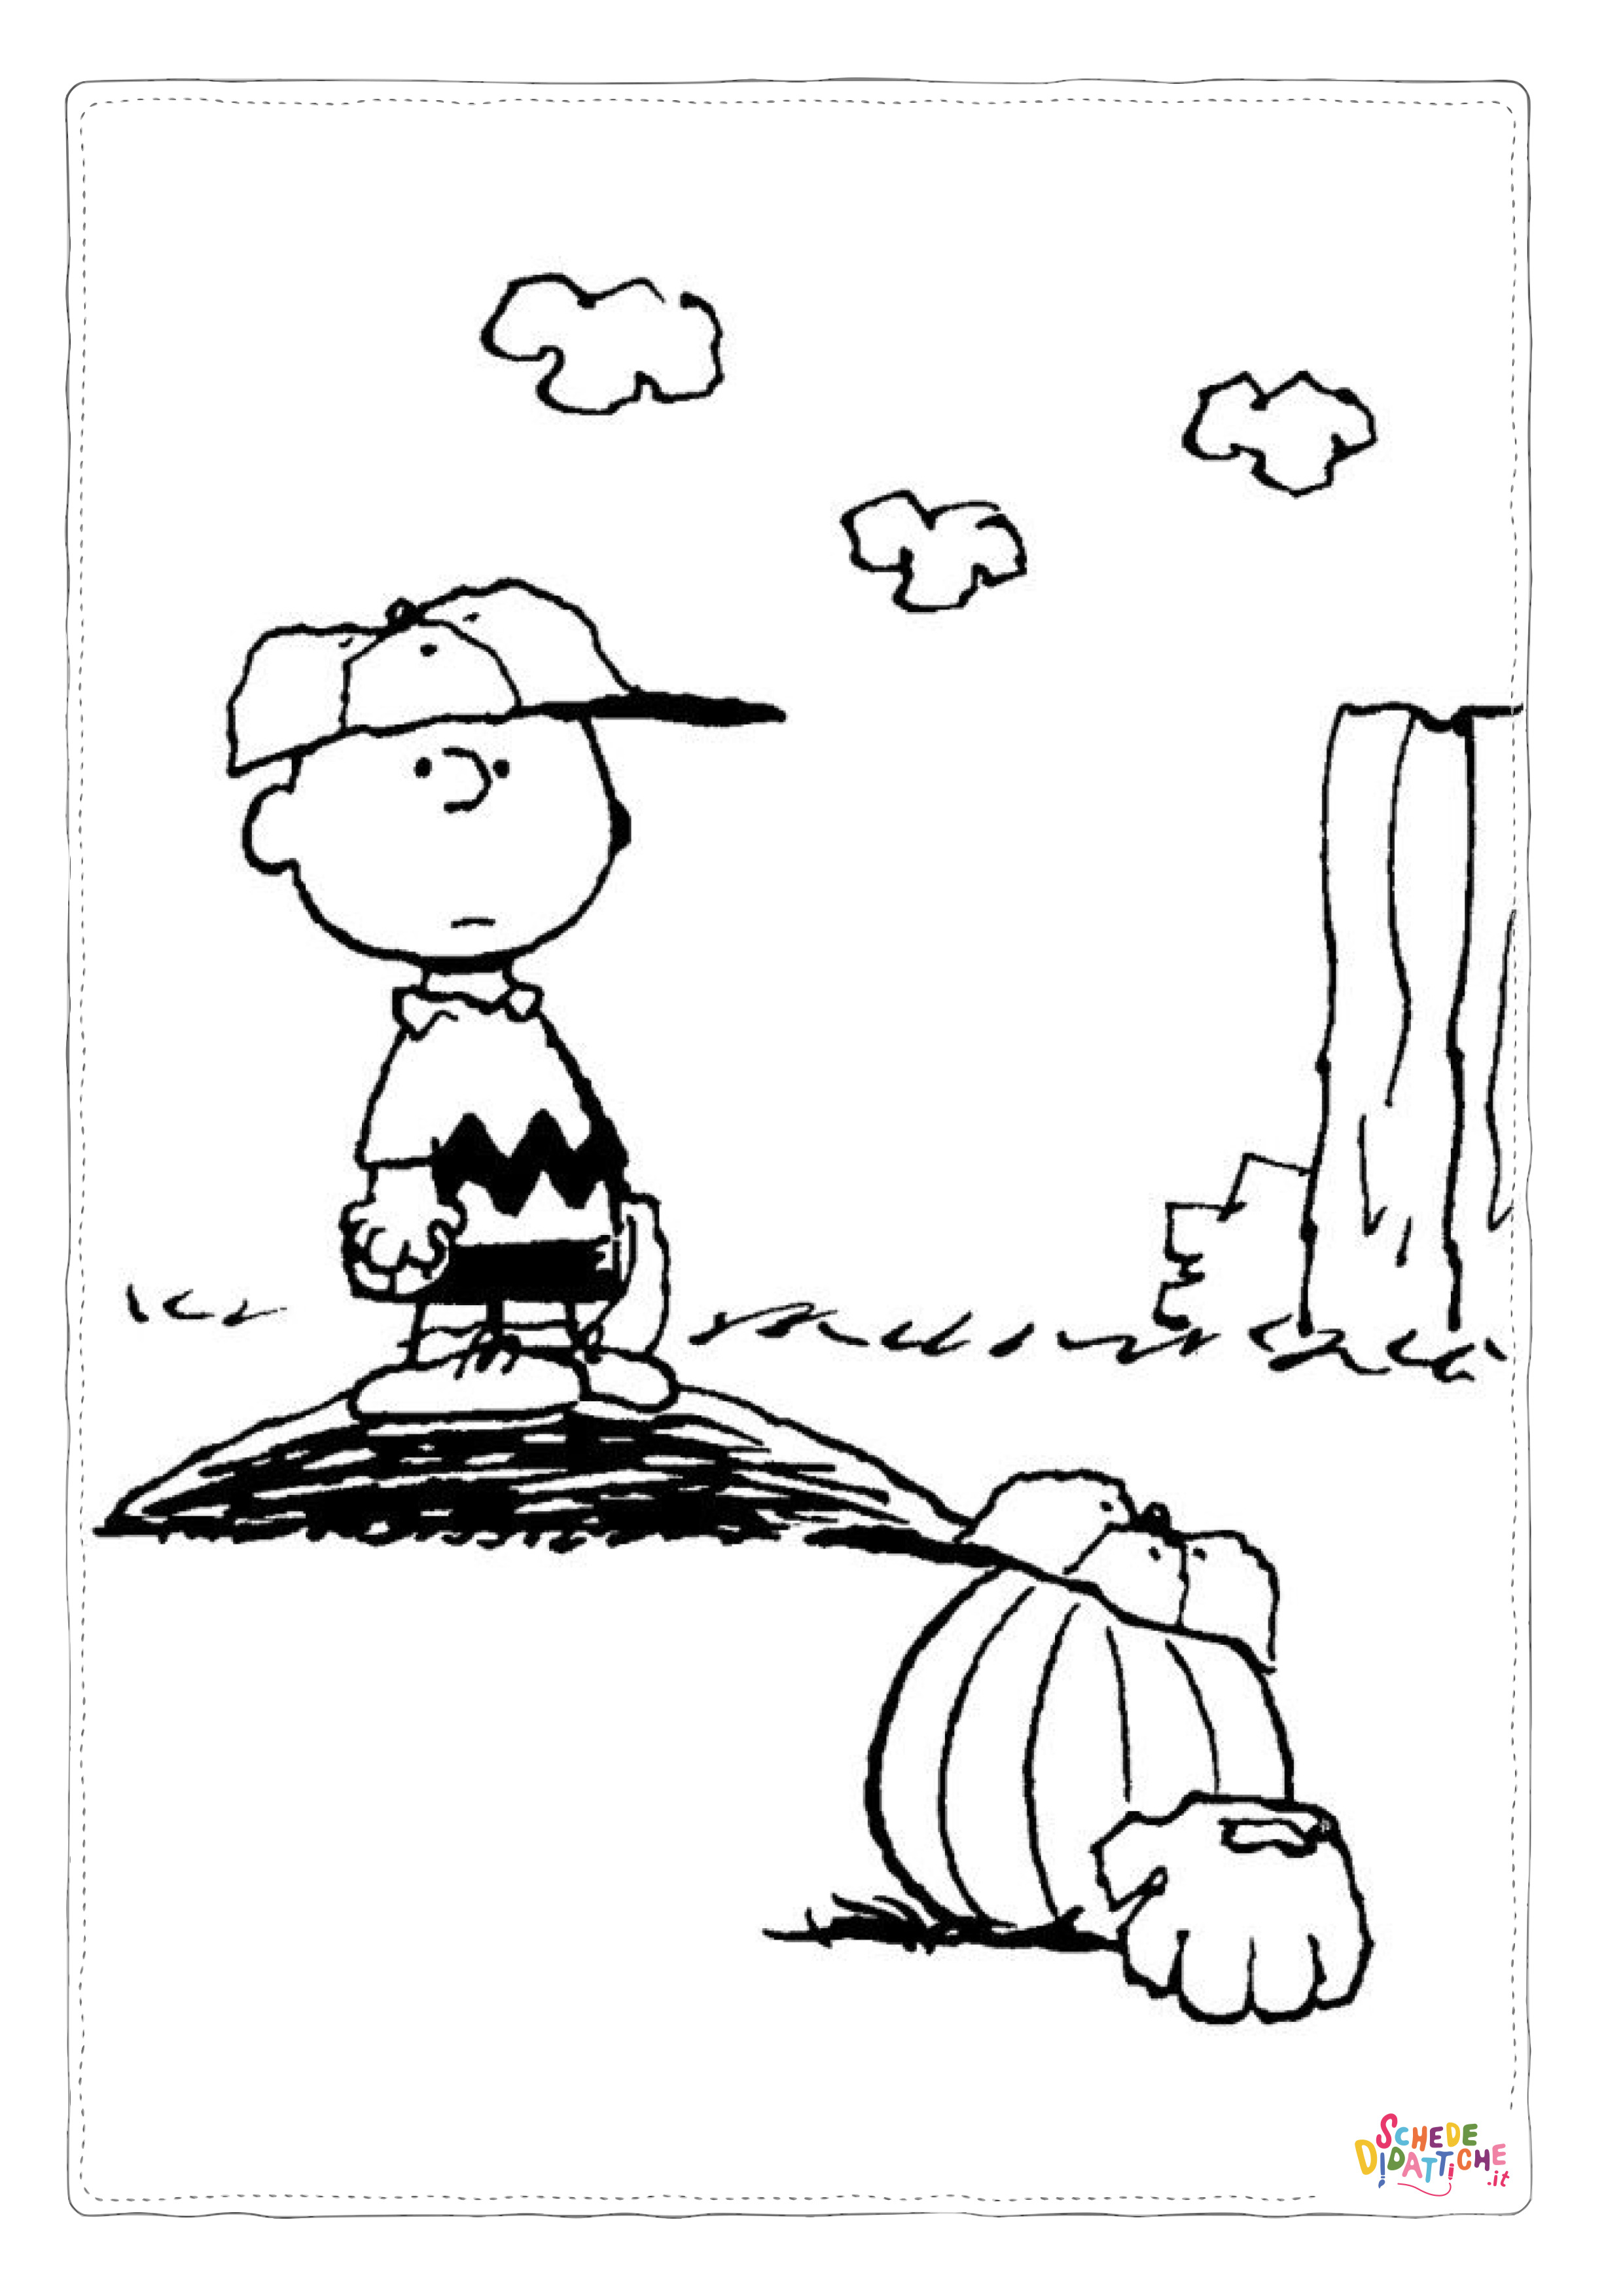 Disegno di Snoopy da stampare e colorare 10